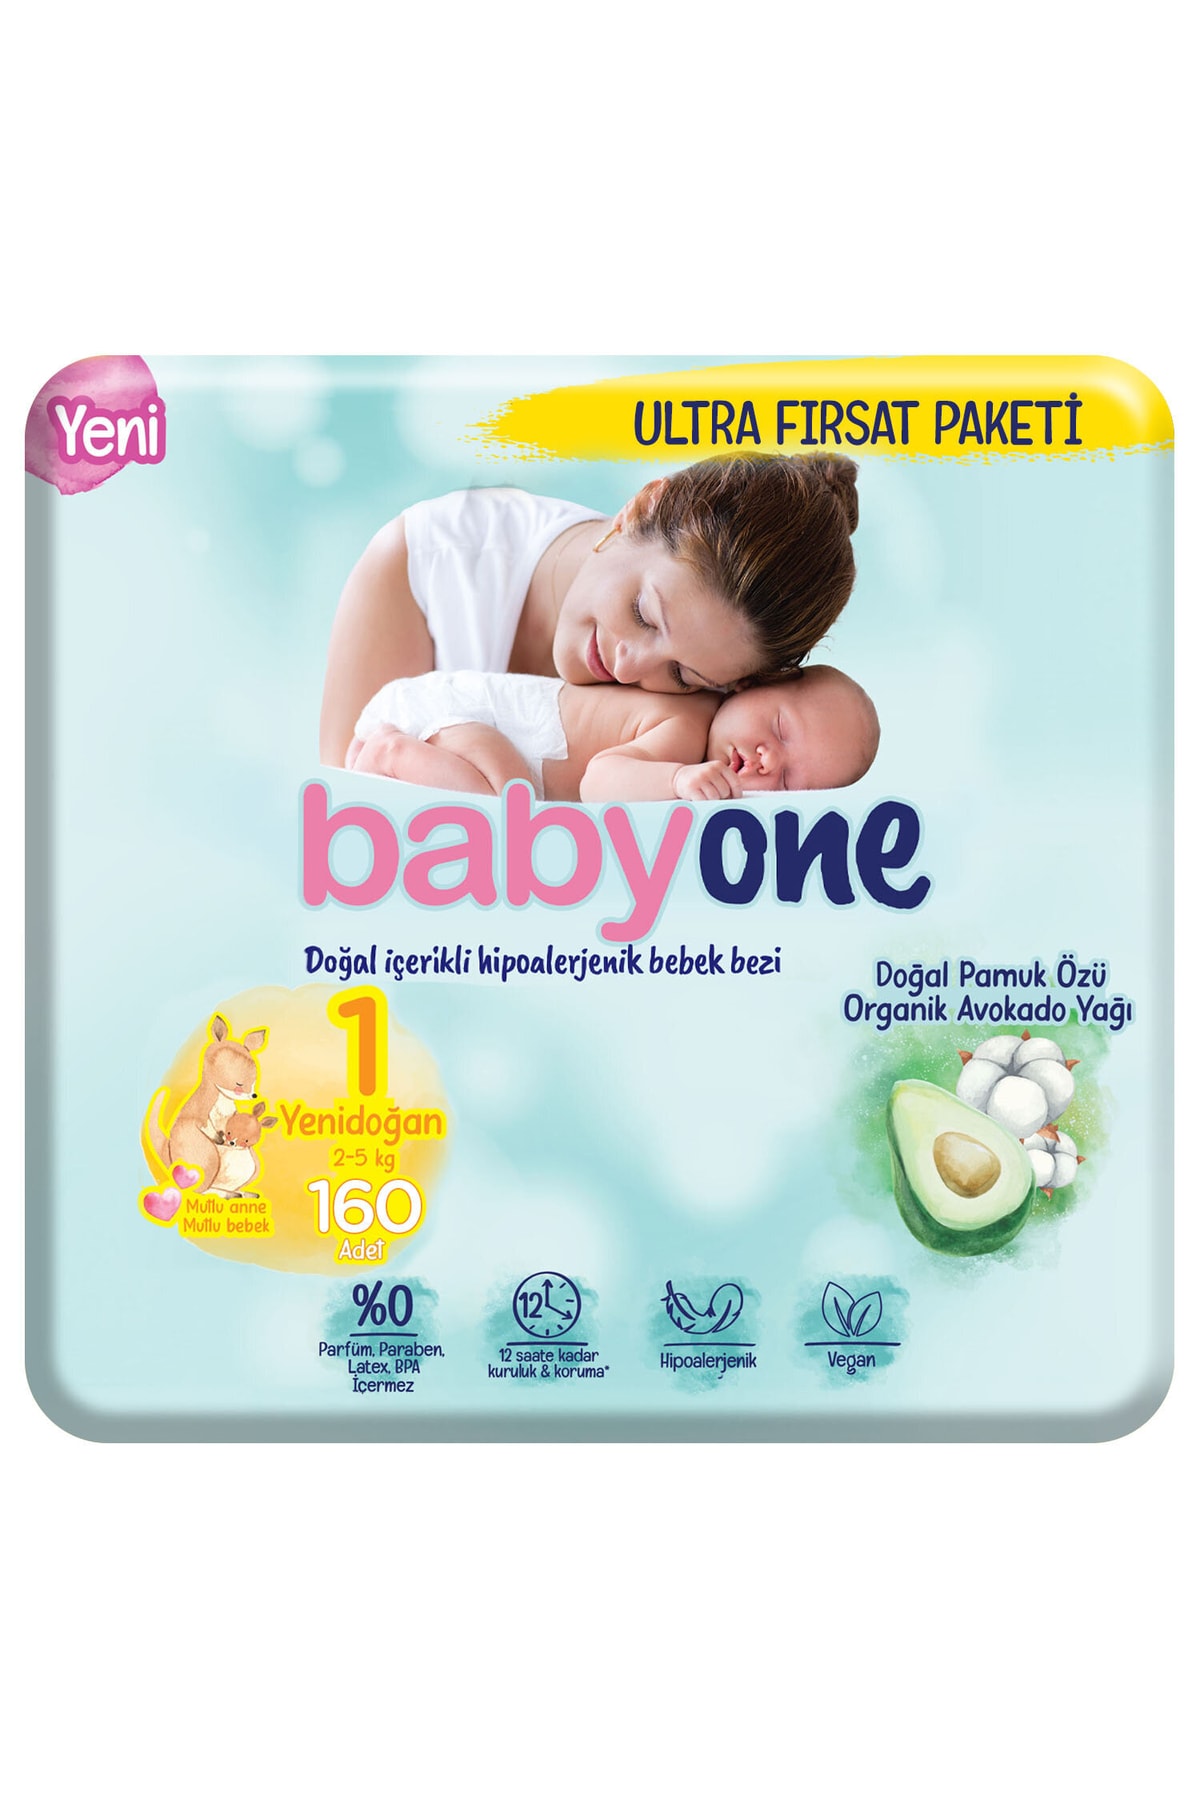 Babyone Yeni Bebek Bezi 1 Beden Yenidoğan Ultra Fırsat Paketi 160 Adet